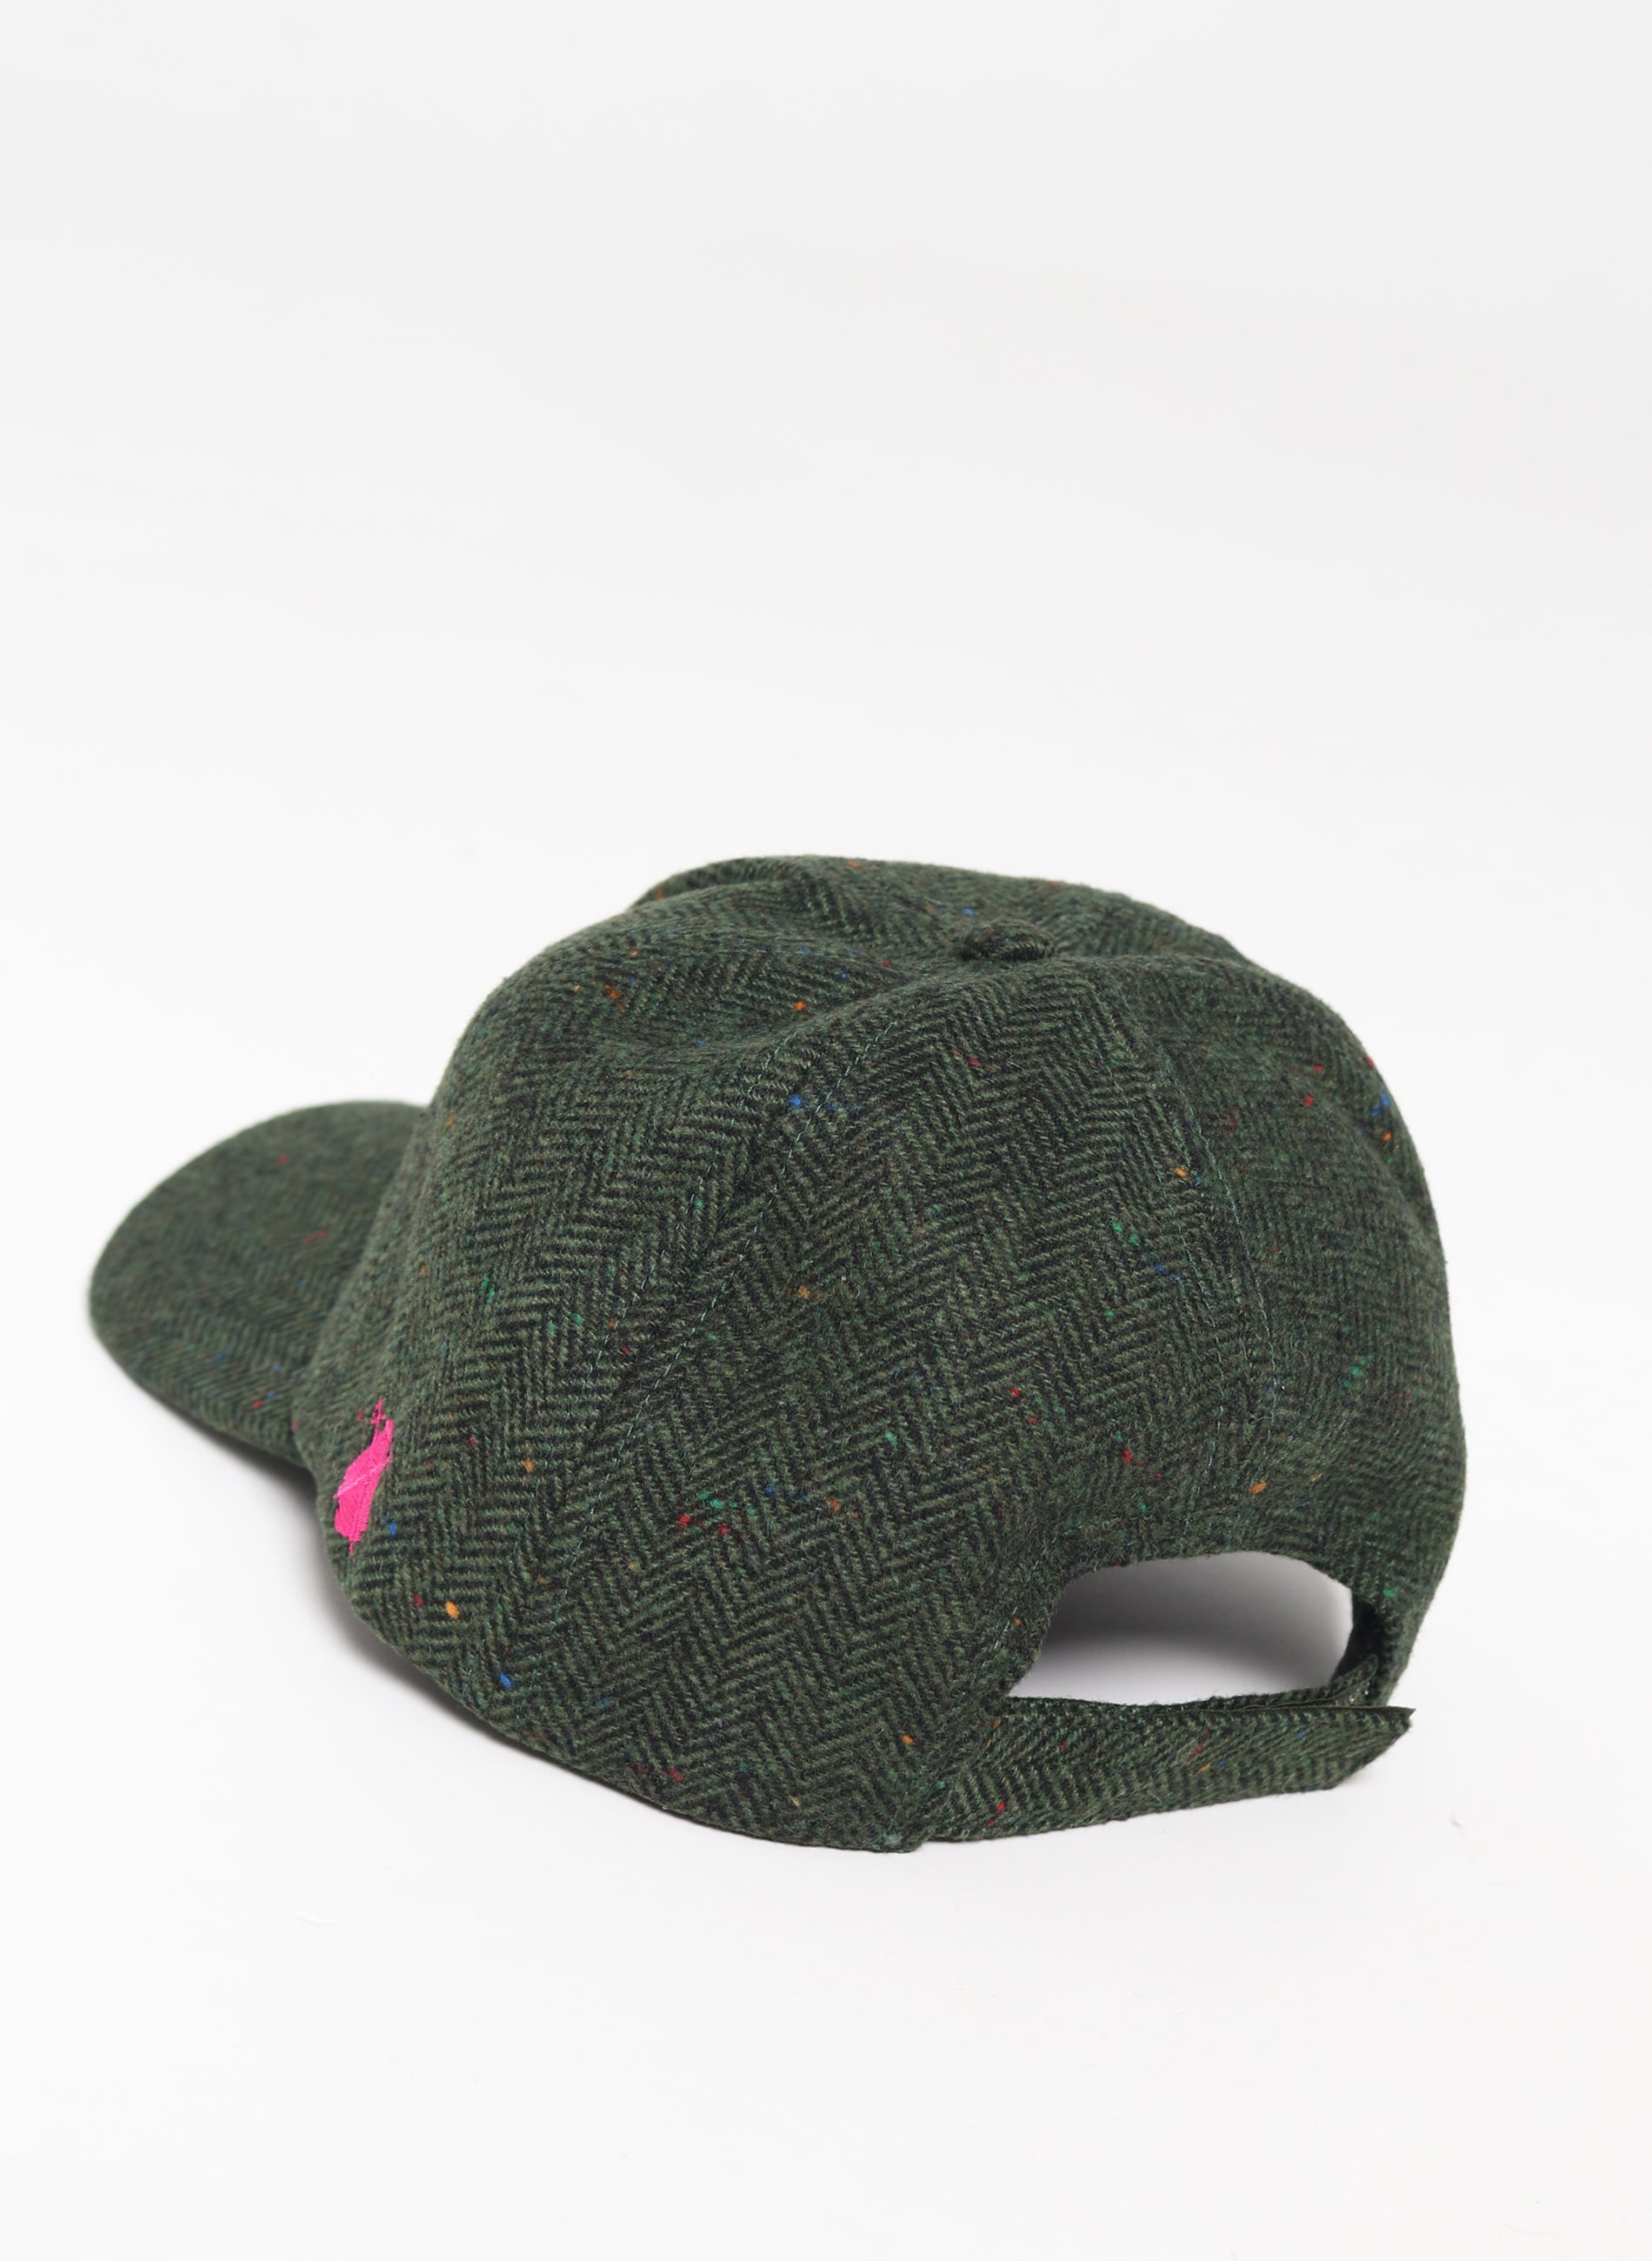 尖刺綠帽